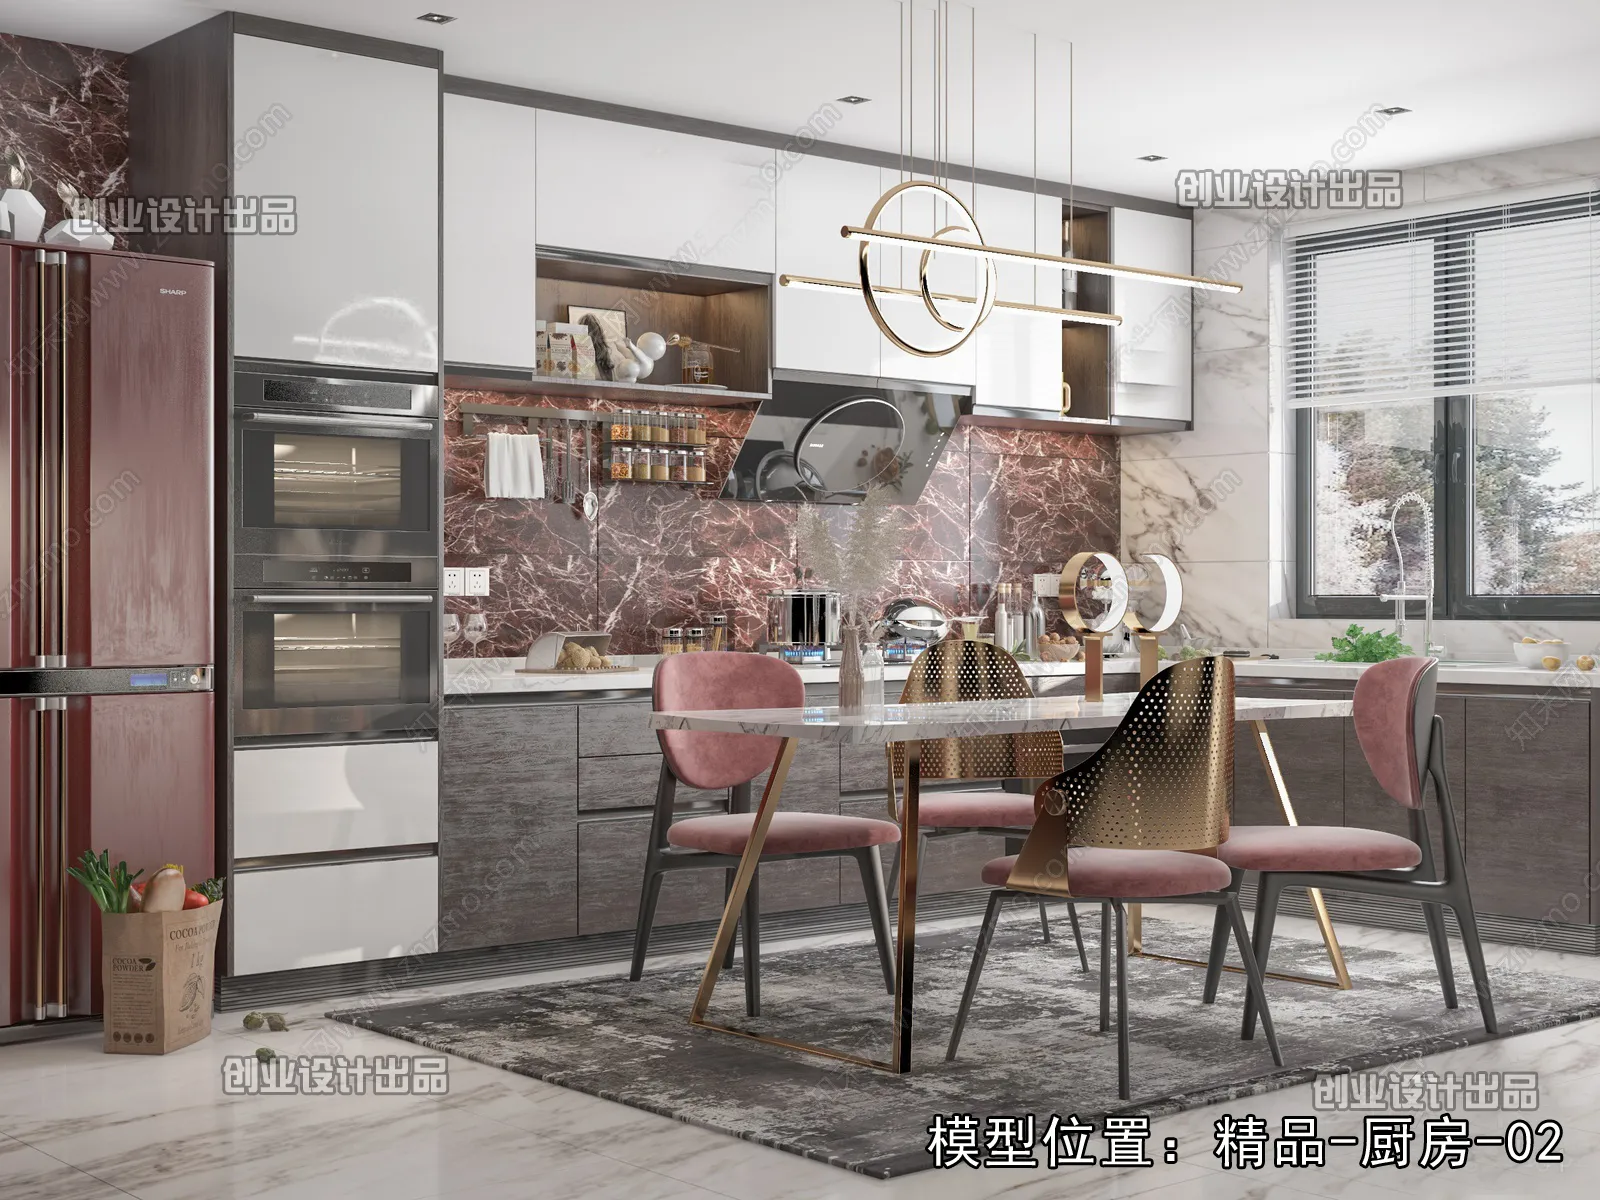 Kitchen – Modern Design – 3D66 – 3D Scenes – 015